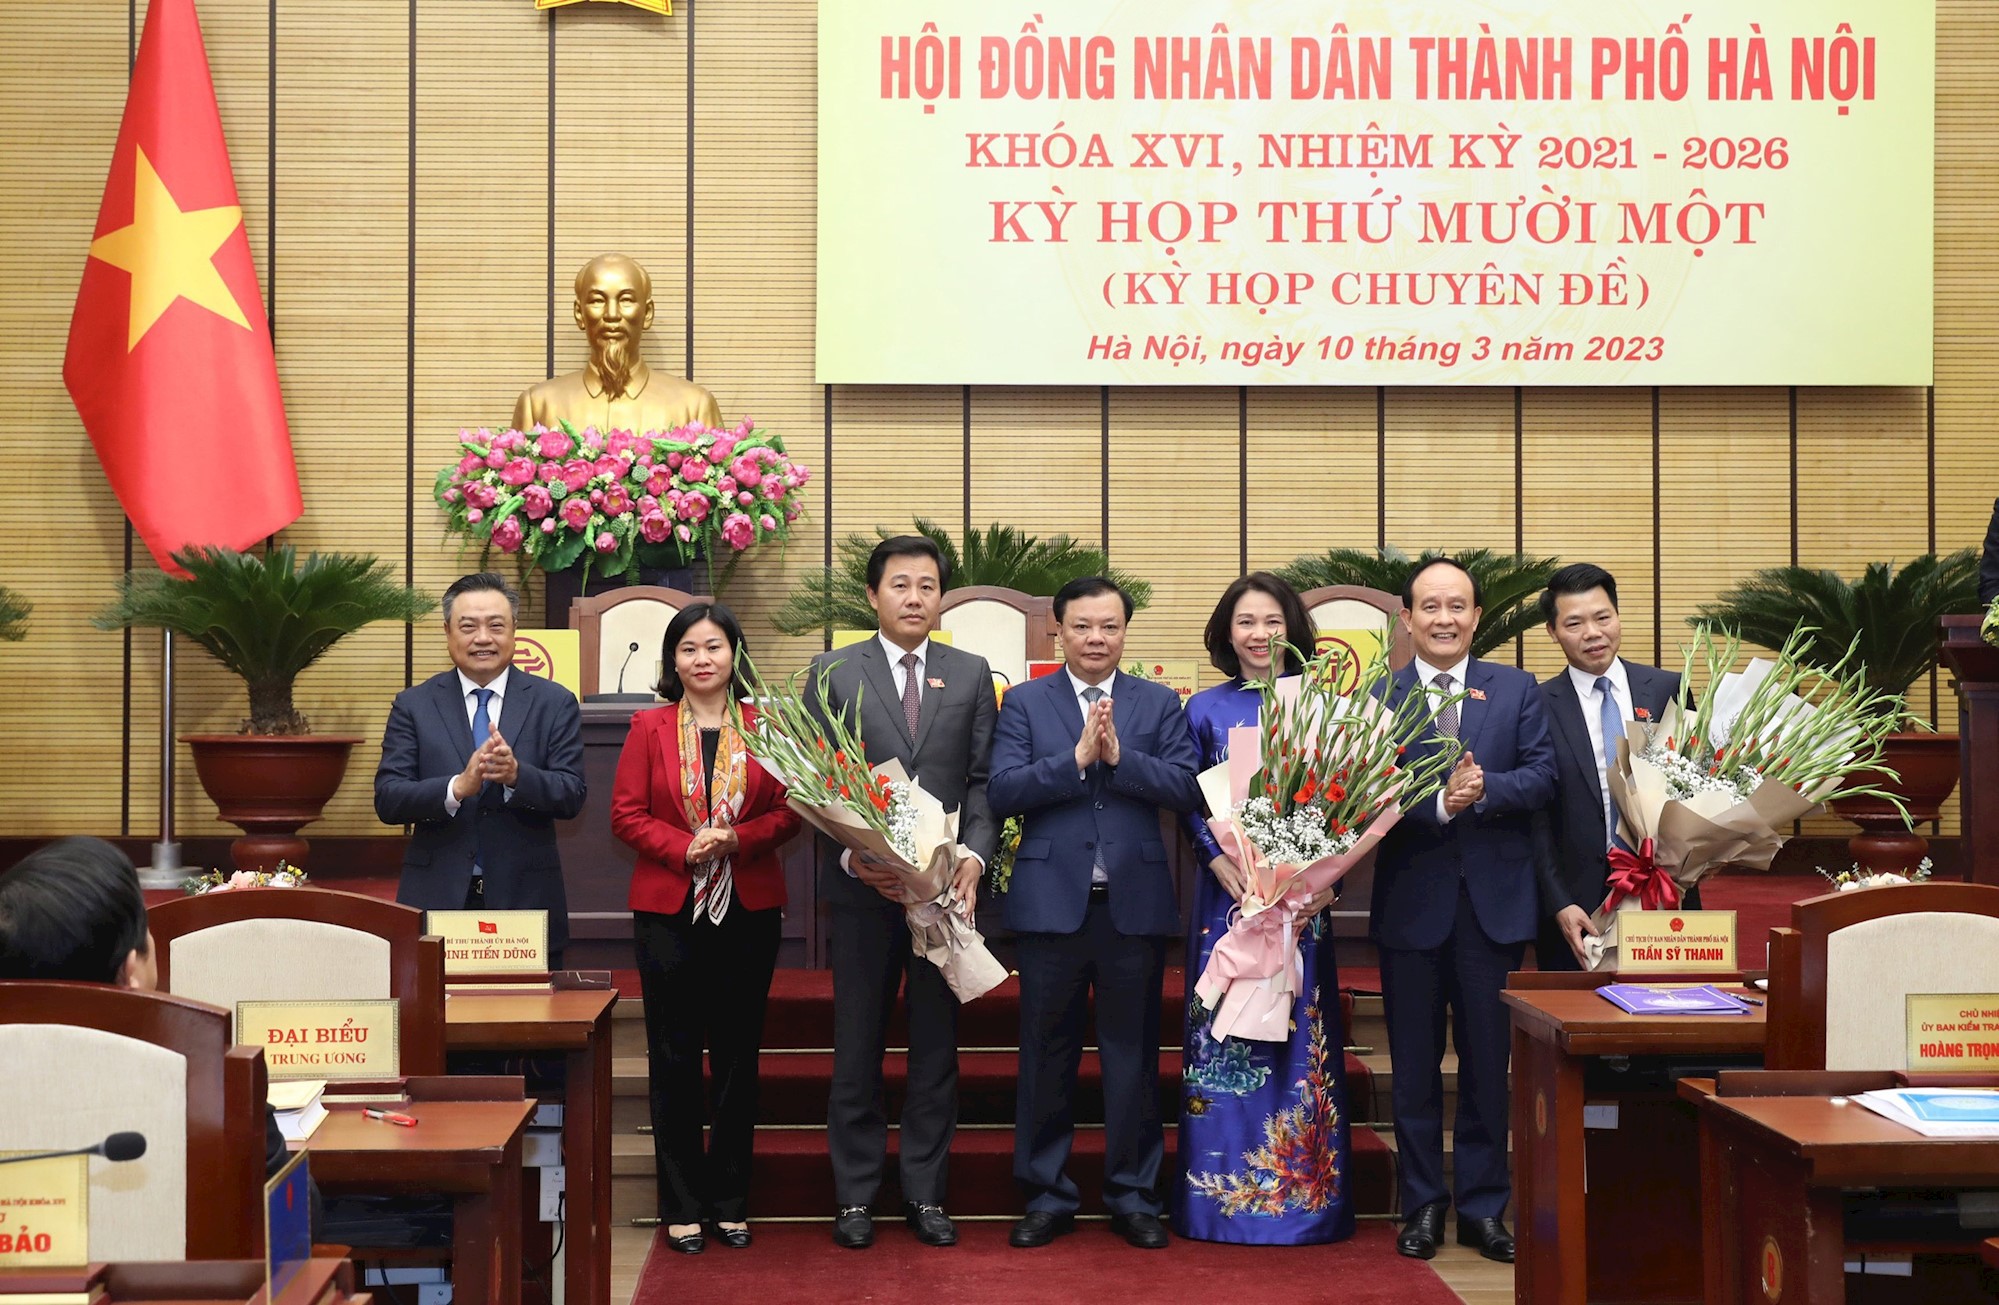 Ủy viên Bộ Chính trị, Bí thư Thành ủy Hà Nội Đinh Tiến Dũng và các đồng chí lãnh đạo thành phố chúc mừng các đồng chí vừa được bầu giữ các cương vị mới.